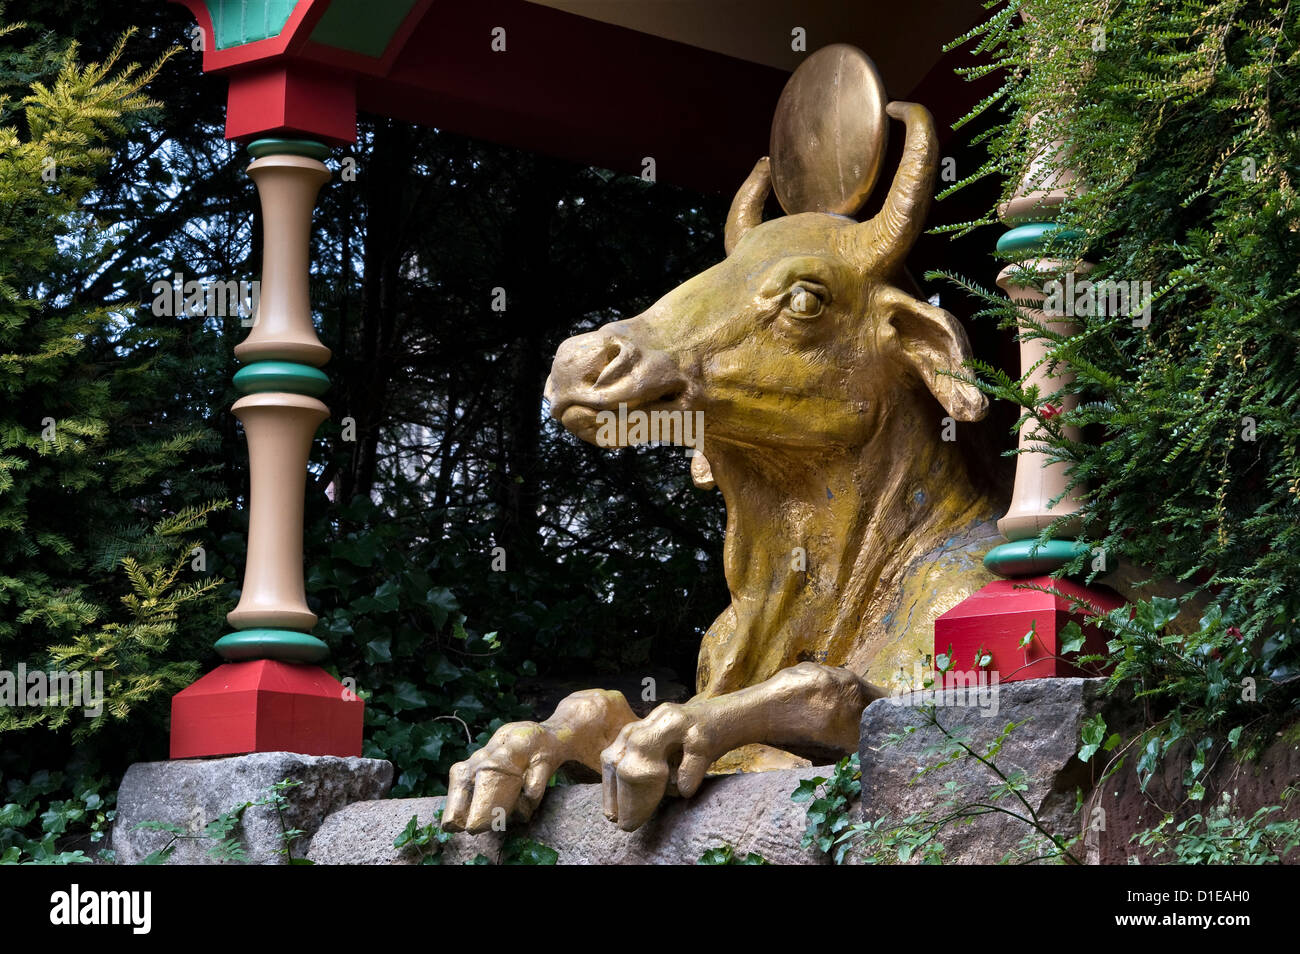 The Golden Calf oder Ox im Biddulph Grange Garden, Staffordshire, Großbritannien, in dem Teil des Gartens, der als "China" bekannt ist Stockfoto